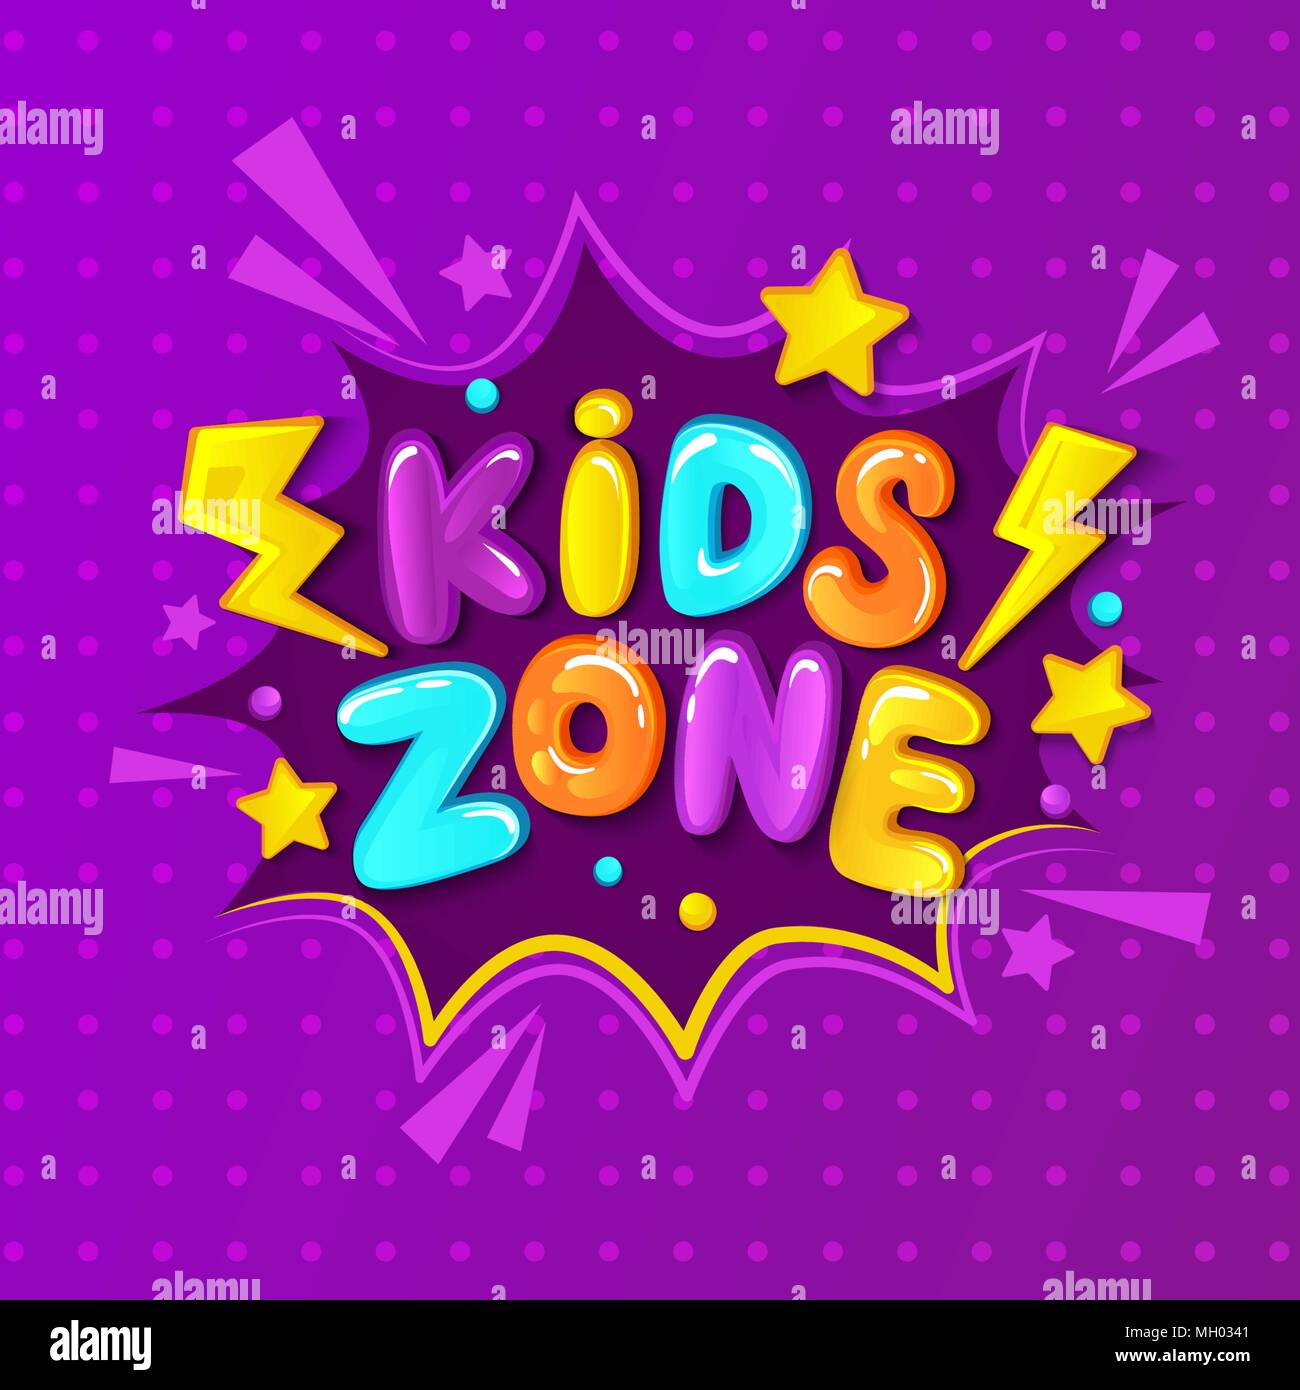 Kids zone banner, emblème ou logo dans le style de dessin animé. Place pour le plaisir et jouer. Vector illustration. Illustration de Vecteur